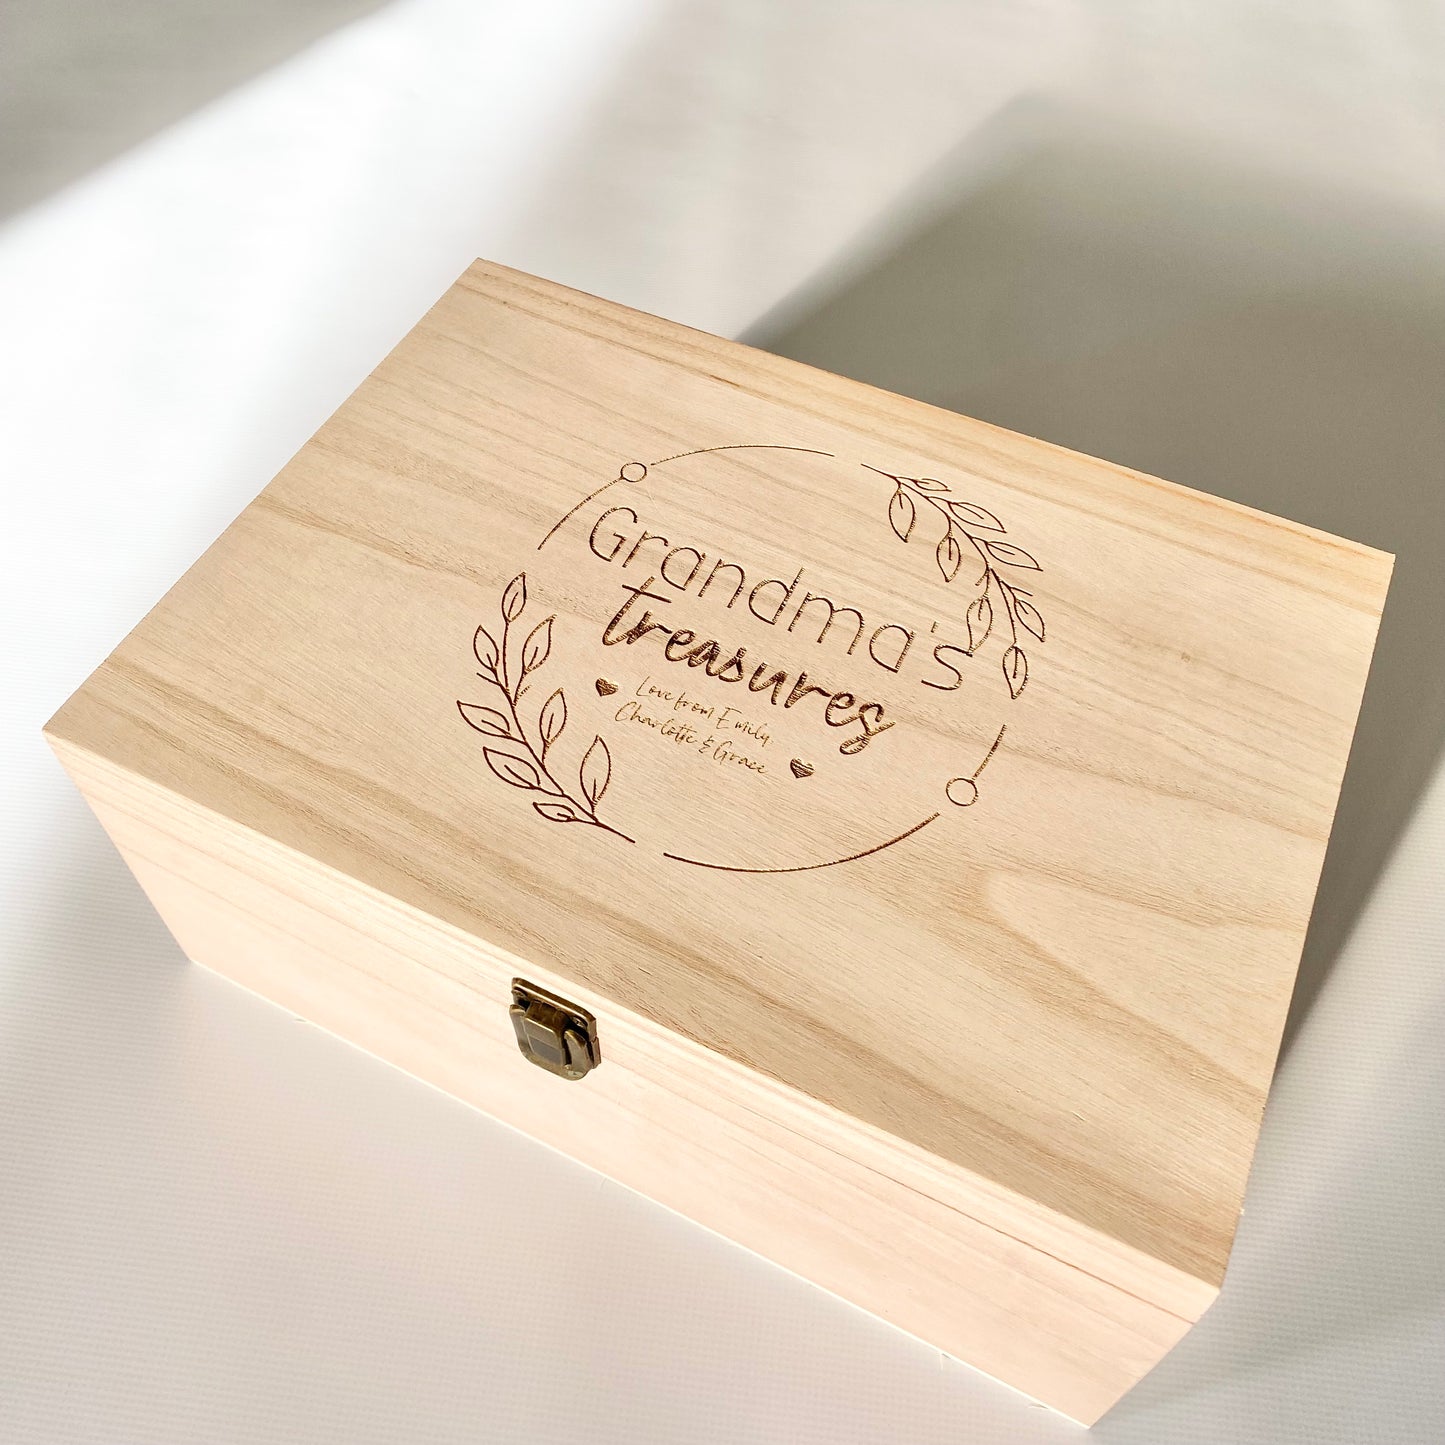 Custom designed keepsake box